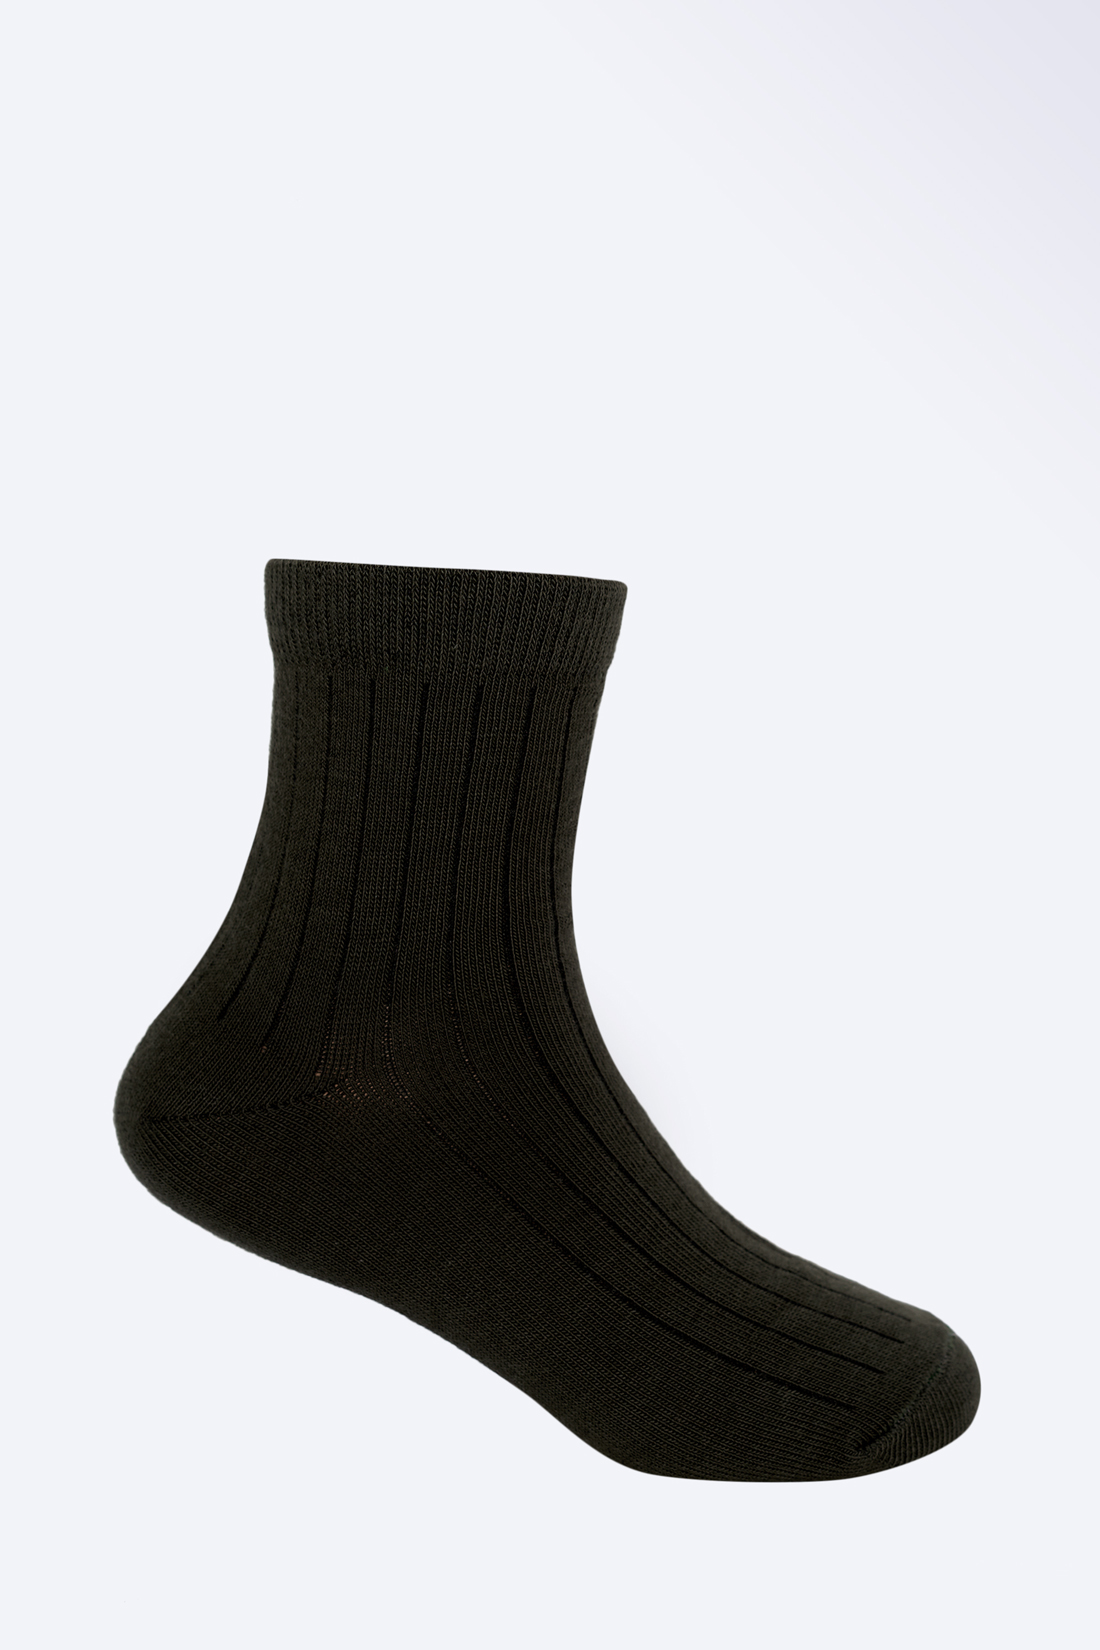 Носки для мальчика (арт. baon BK899507), размер 26/28, цвет зеленый